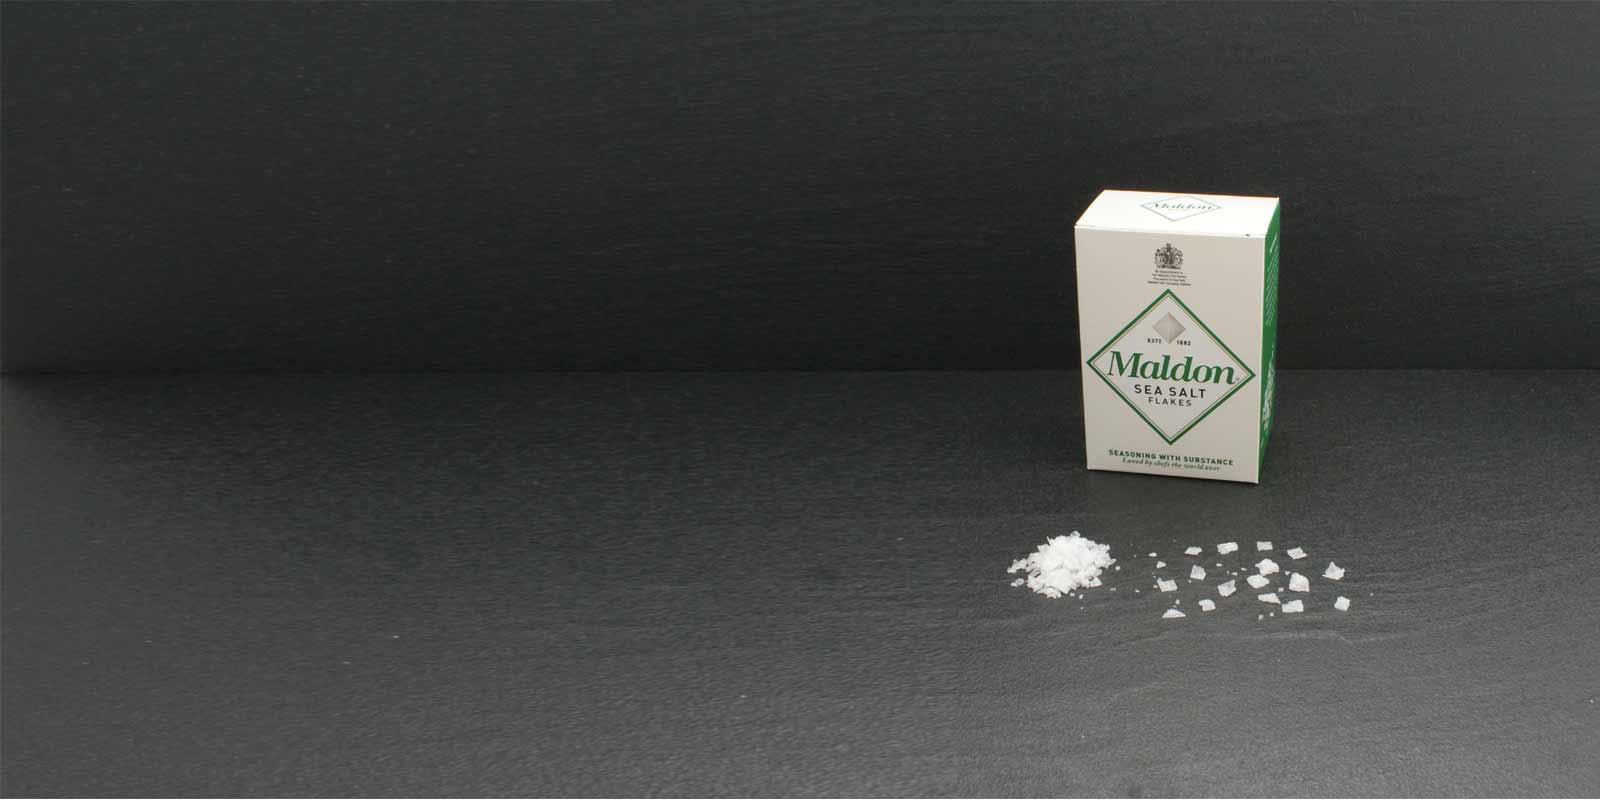 Cristale de fulgi de sare de mare Maldon Cristalele de sare caracteristice, in forma de piramida, sunt extrem de subtiri si pot fi frecate cu usurinta intre degete pentru condimentare. Sarea valoroasa este extrasa de Maldon Sea Salt Company, singura companie de exploatare a sarii din Anglia. Mica afacere de familie prelucreaza si vinde sarea din 1882. Sarea de mare Maldon este disponibila doar in cantitati limitate.